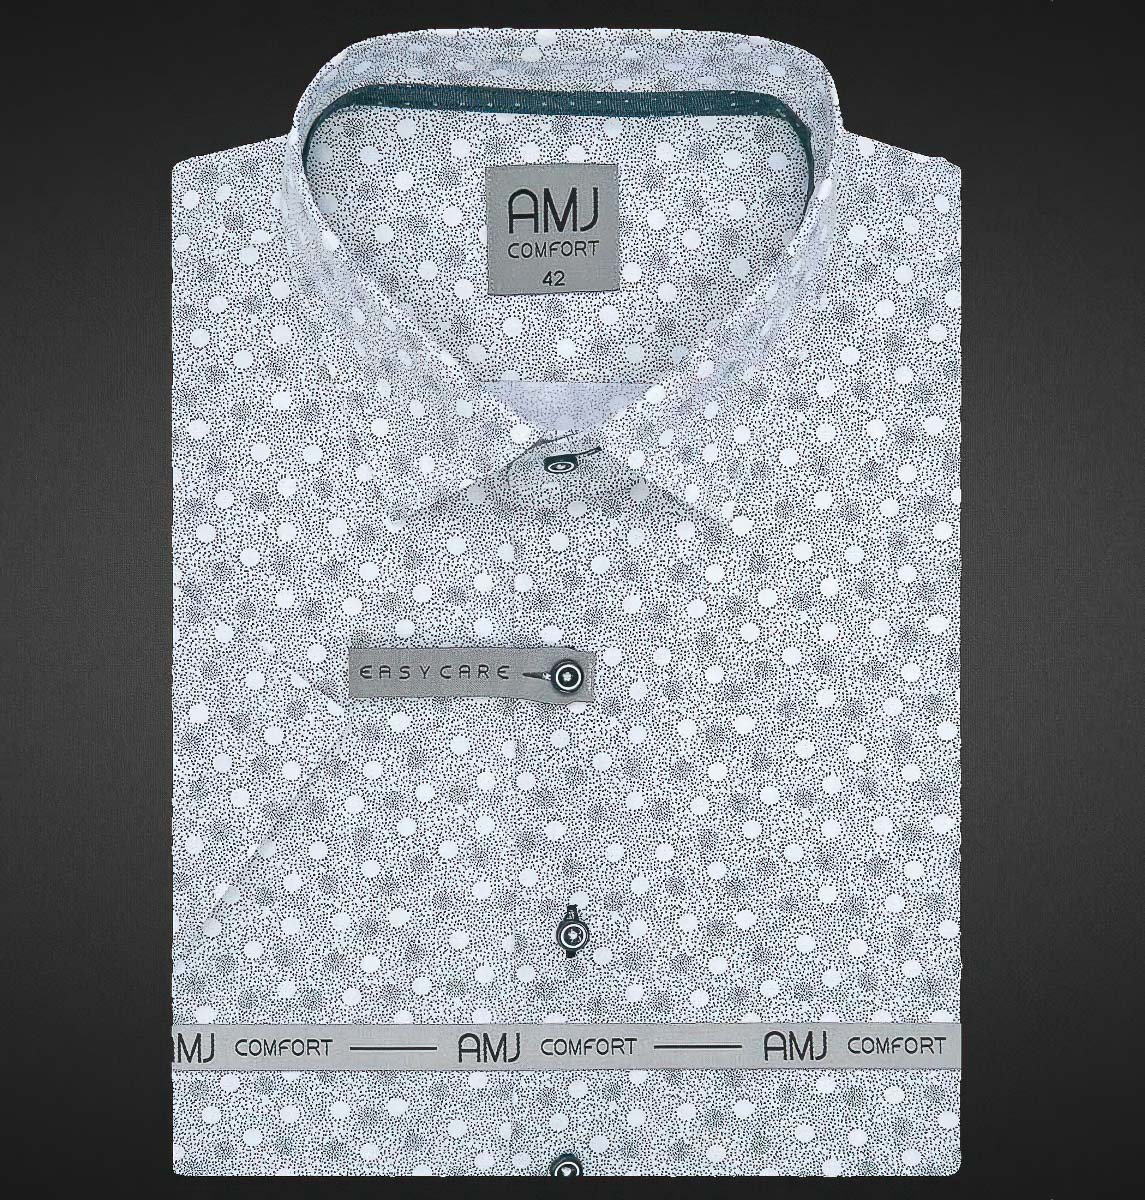 Pánská košile AMJ bavlněná, šedomodré puntíky a tečky na bílé VKBR1136, krátký rukáv (regular + slim fit)